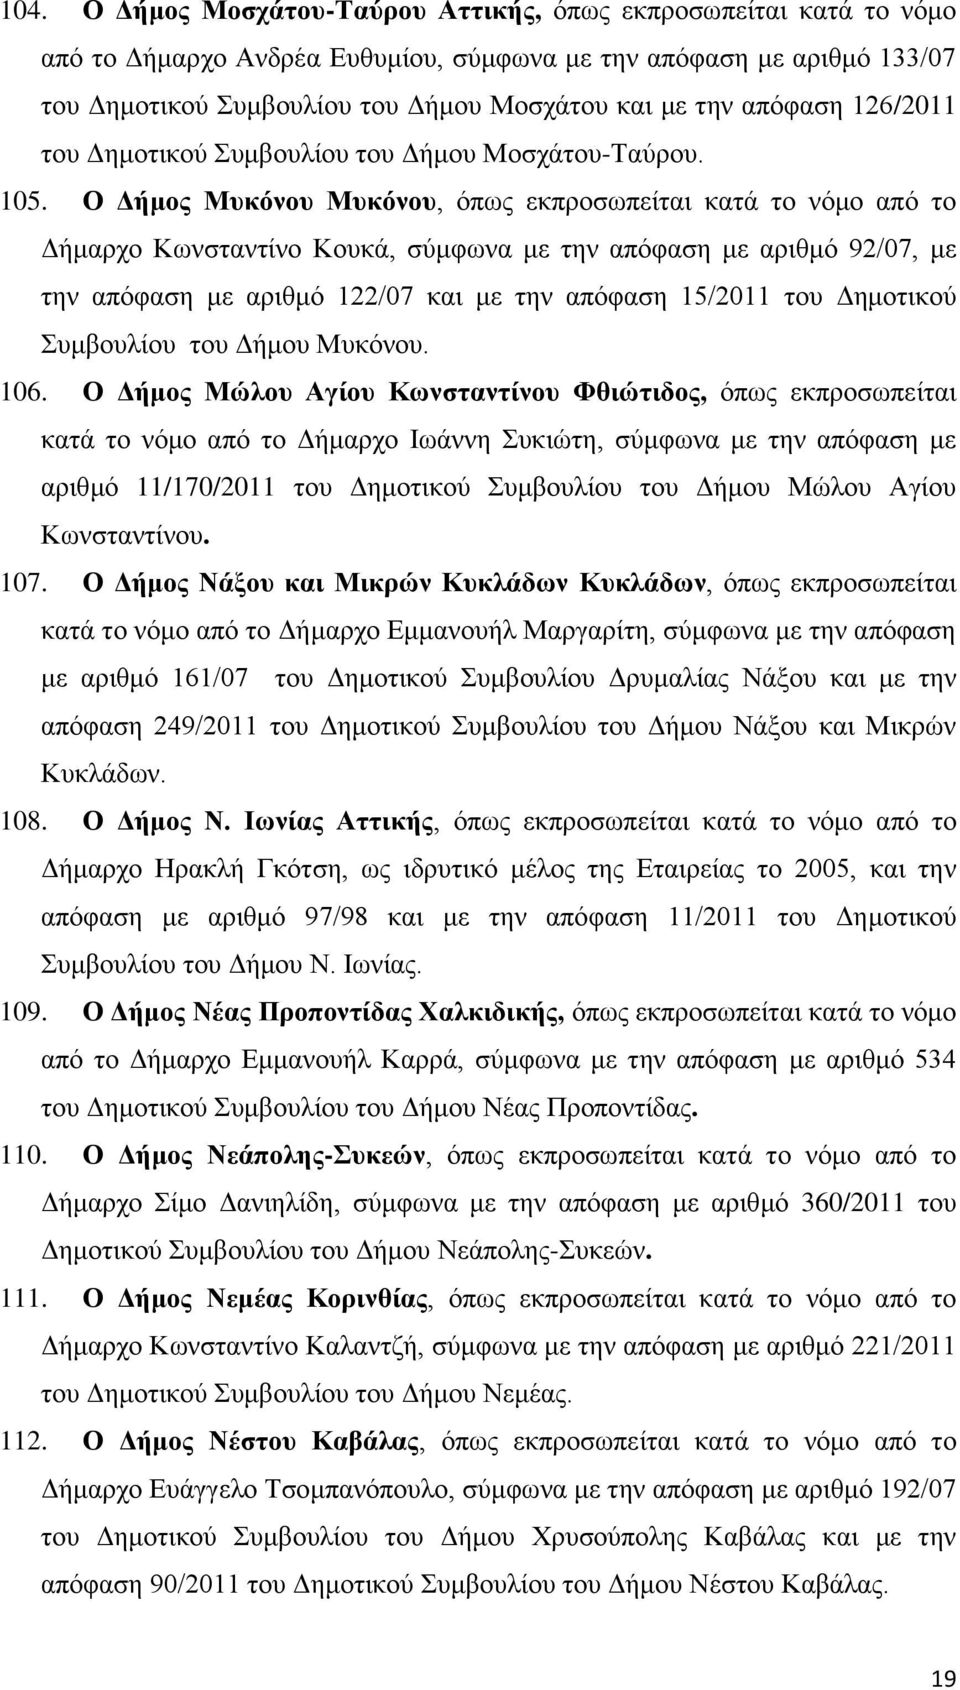 Ο Δήμος Μυκόνου Μυκόνου, όπως εκπροσωπείται κατά το νόμο από το Δήμαρχο Κωνσταντίνο Κουκά, σύμφωνα με την απόφαση με αριθμό 92/07, με την απόφαση με αριθμό 122/07 και με την απόφαση 15/2011 του